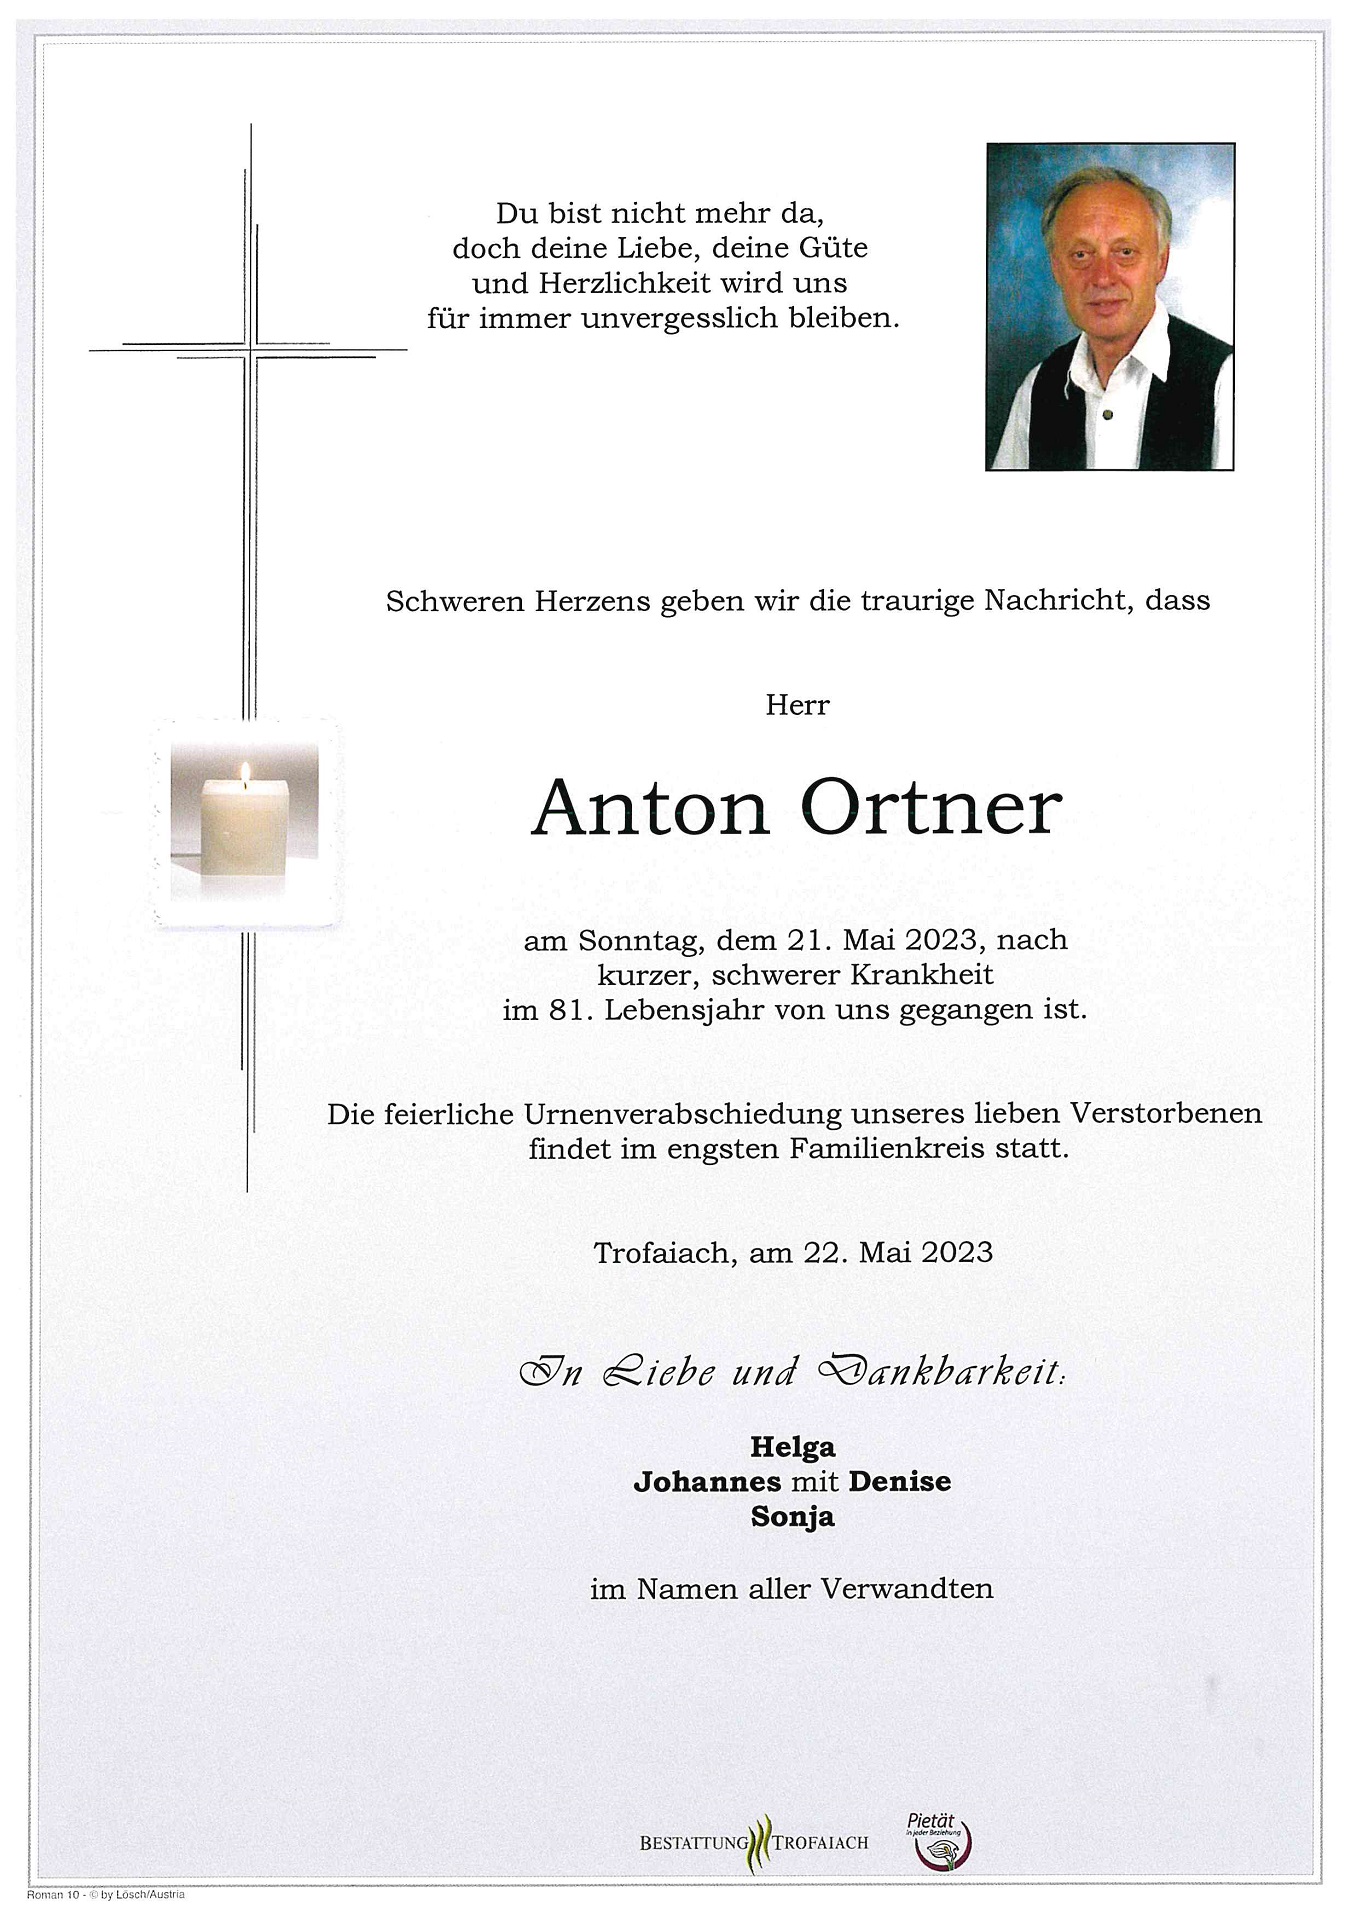 Ortner Anton